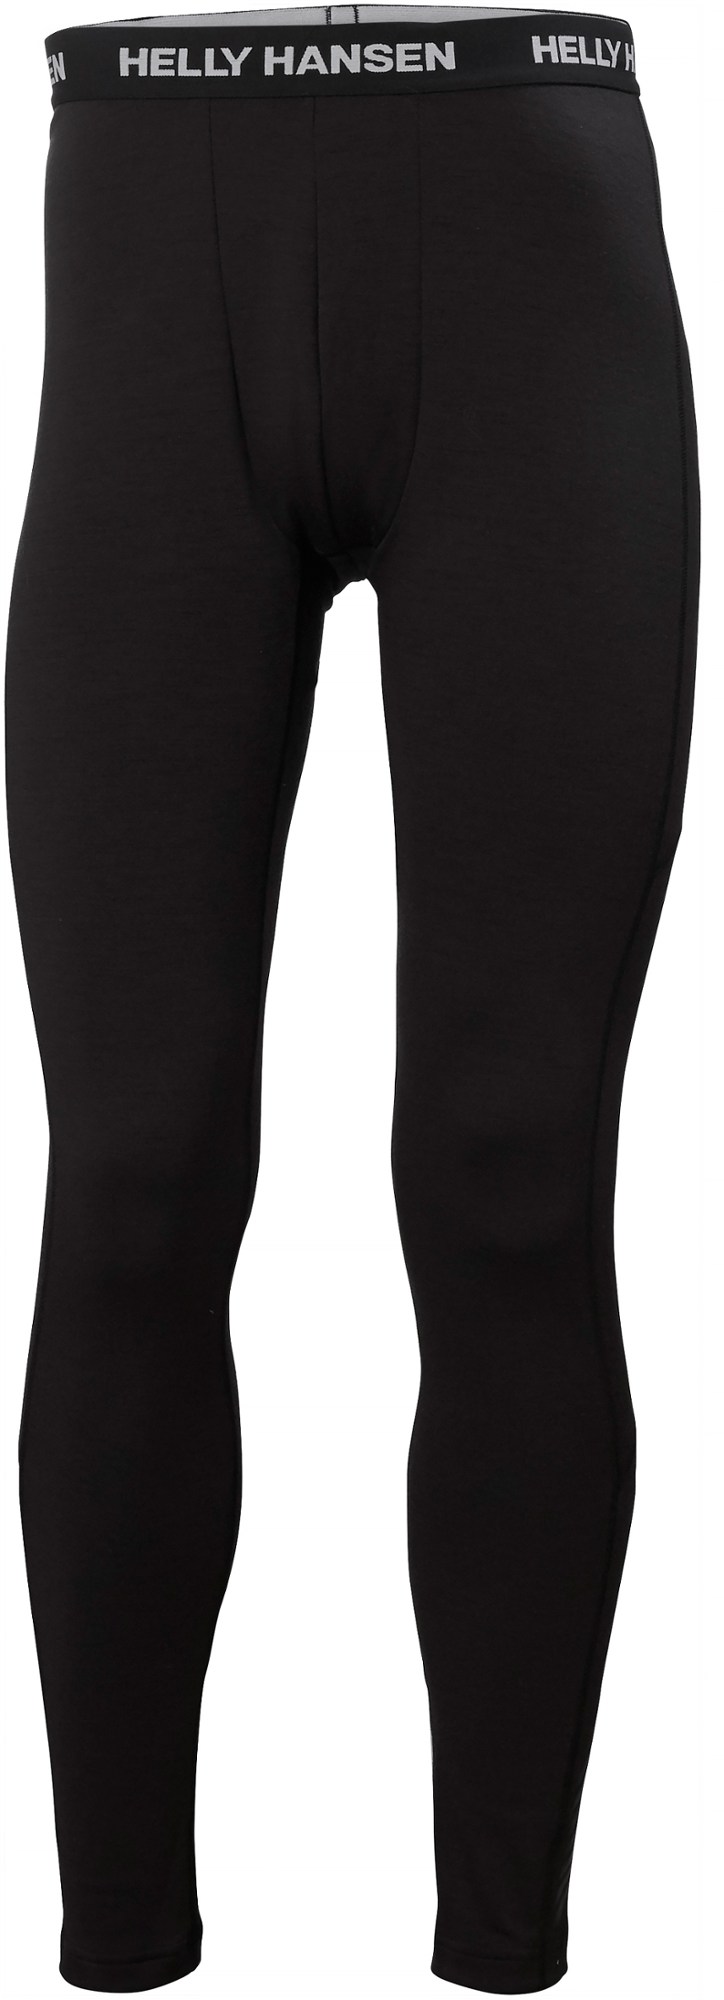 Легкие брюки с базовым слоем Lifa Merino — мужские Helly Hansen, черный